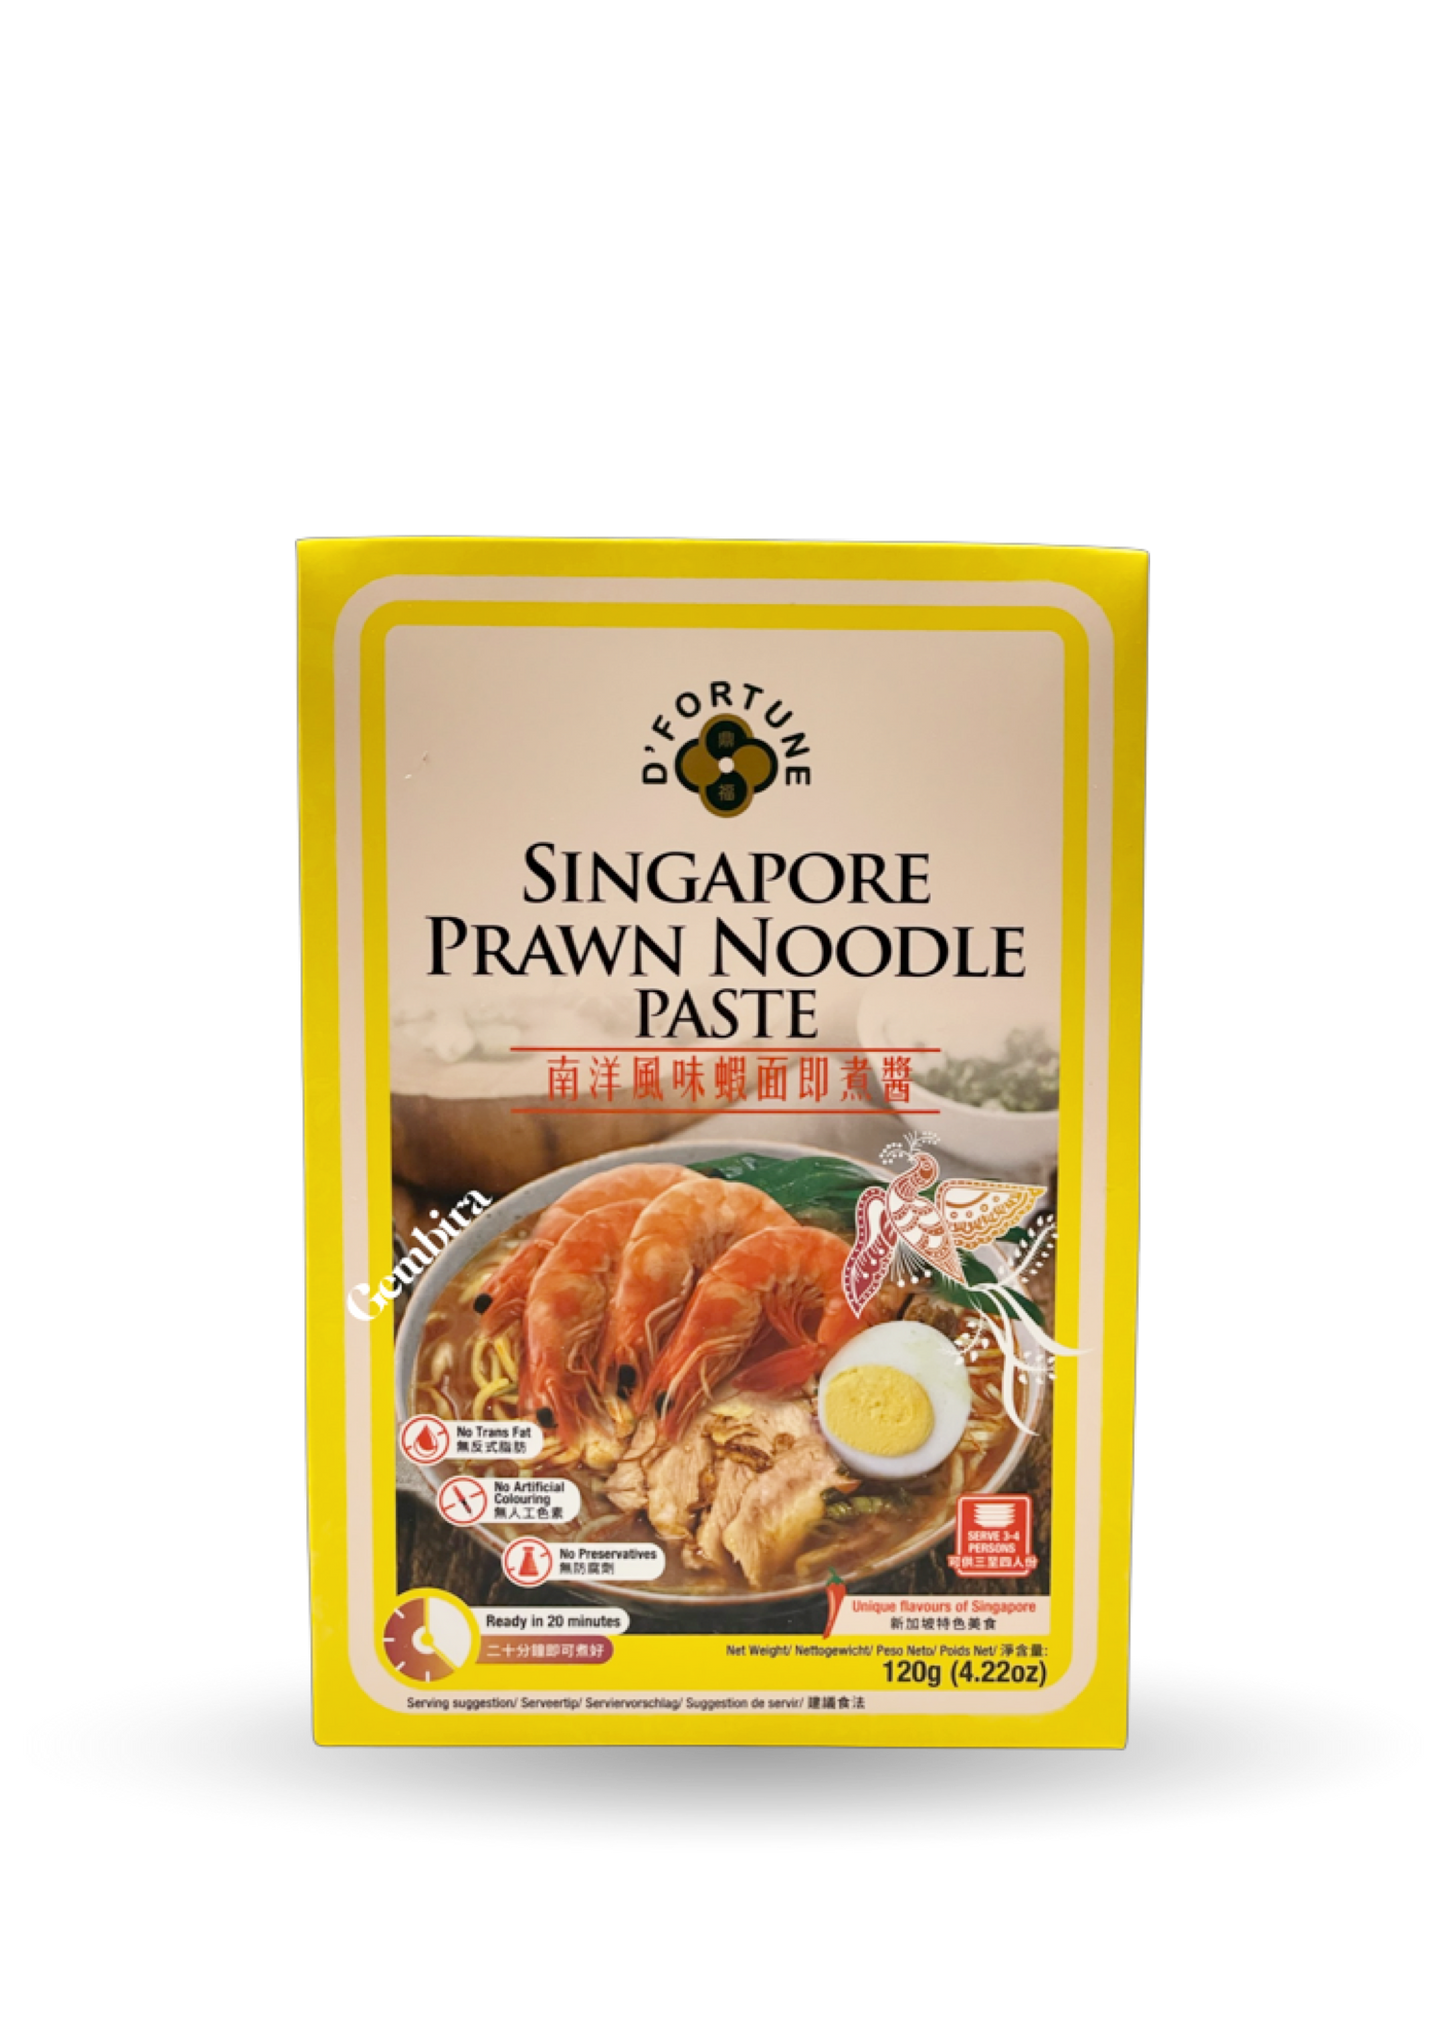 Singapore Prawn Noodle | Paste